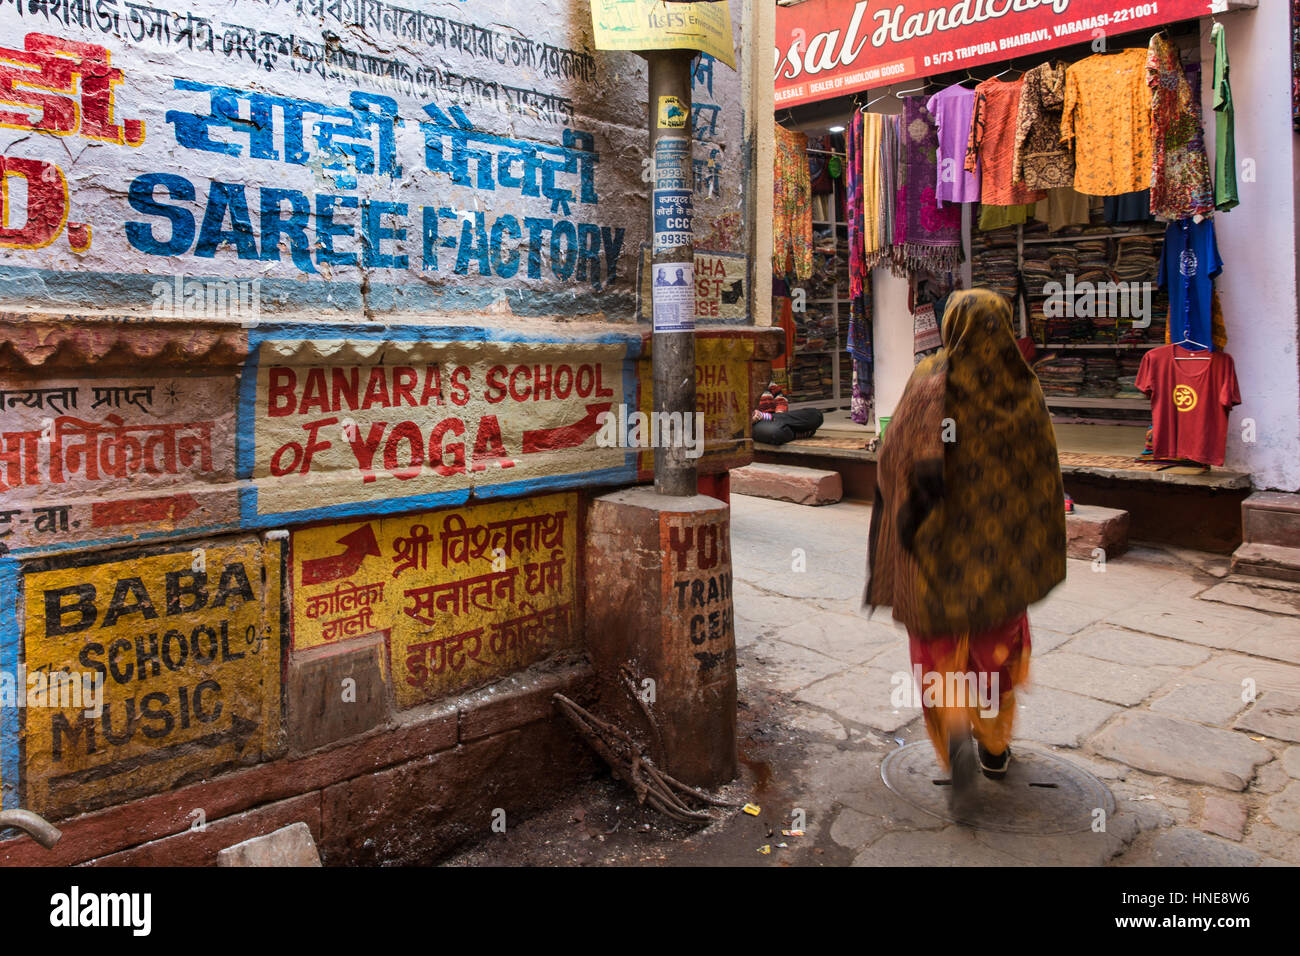 Les panneaux peints à la main de yoga publicité lodges, les écoles de musique et restaurants à Varanasi, en Inde, l'une des destinations touristiques les plus populaires. Banque D'Images